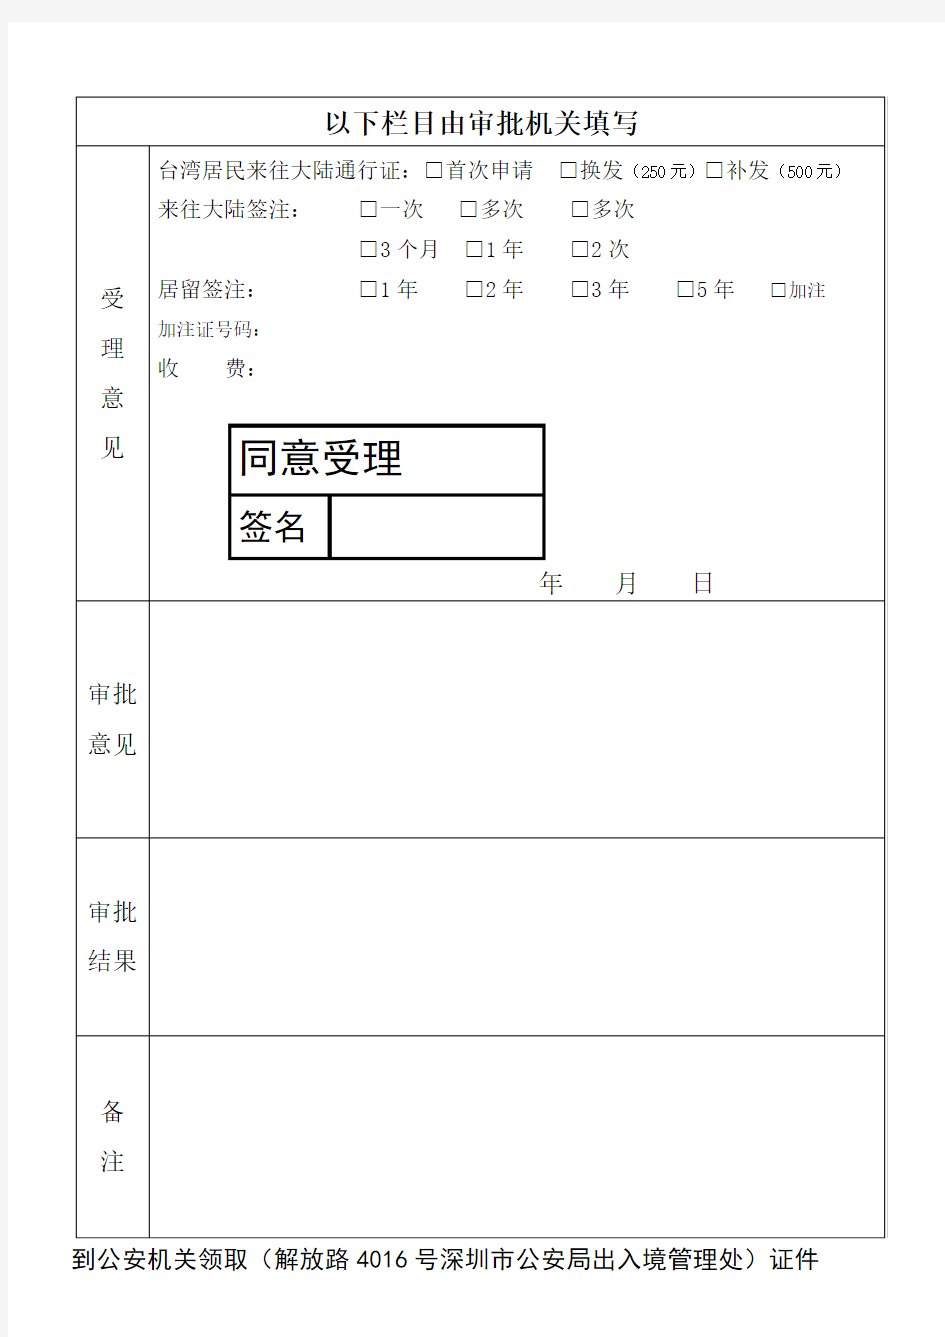 台湾居民来往大陆通行证、签注申请表